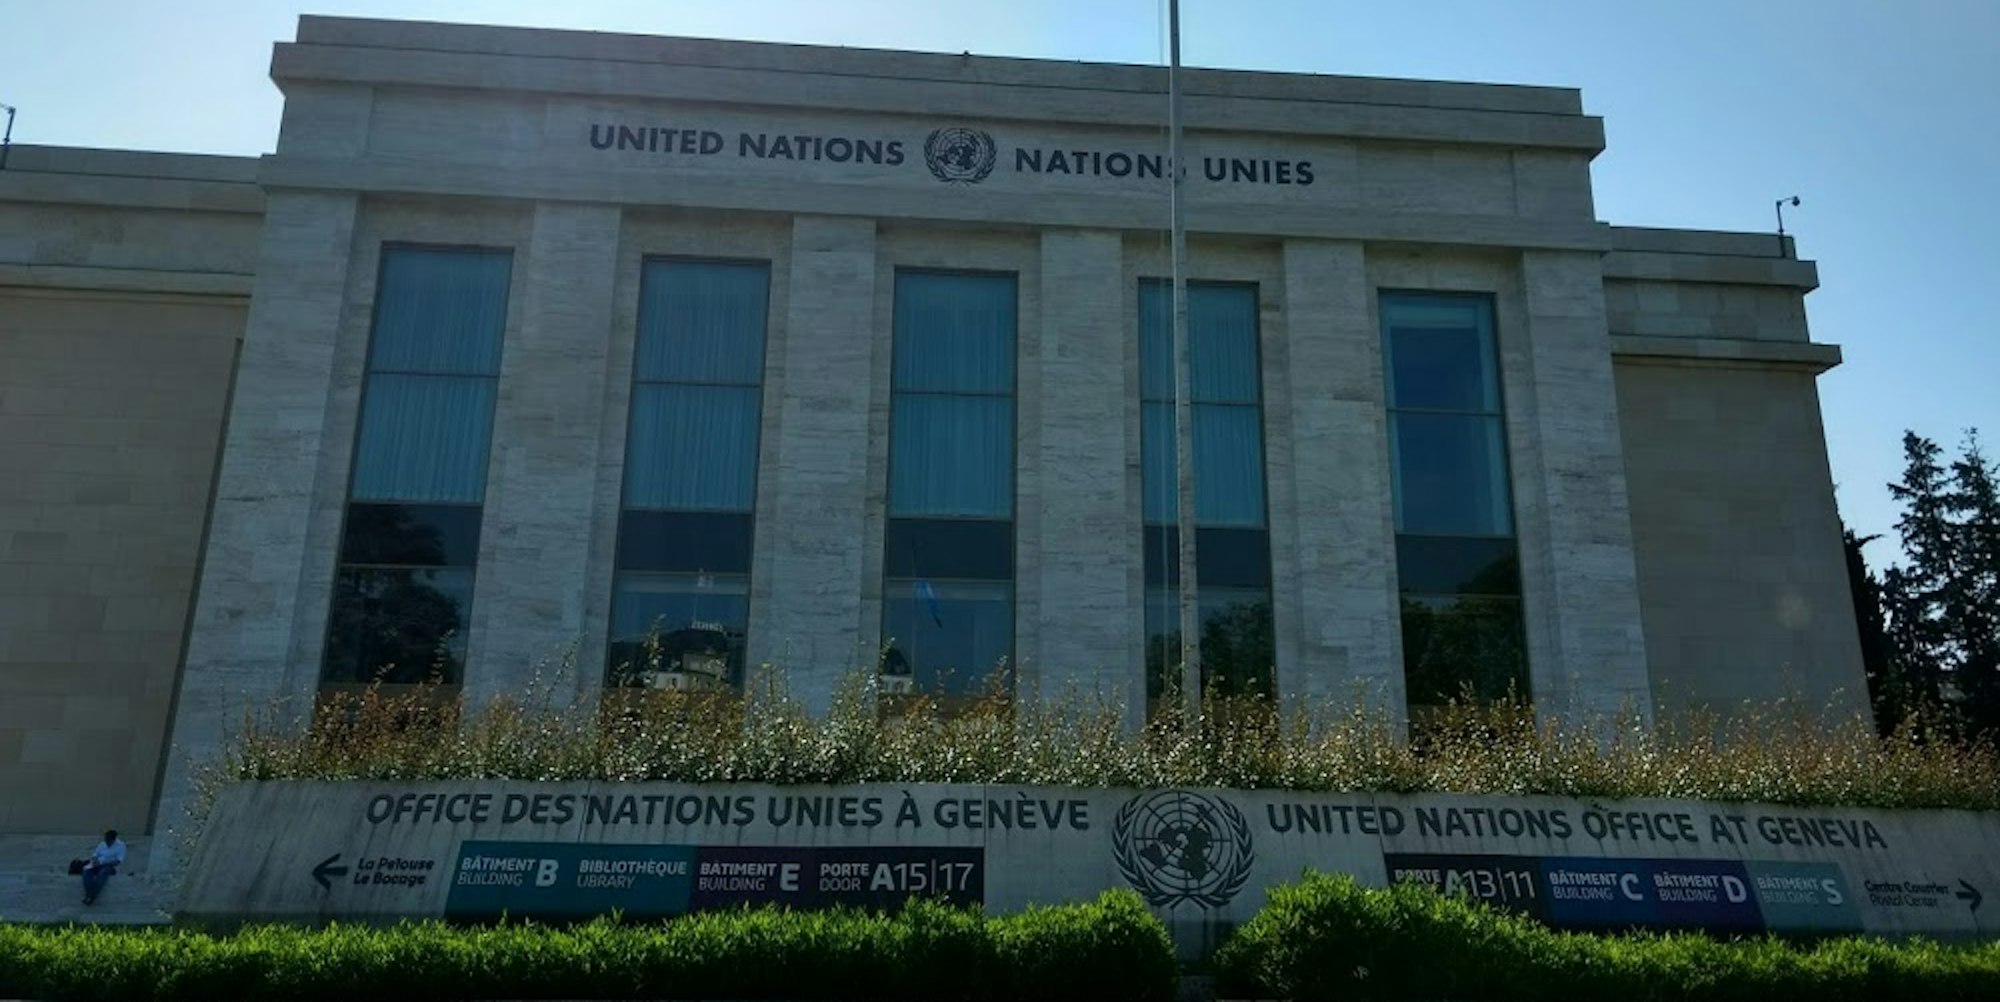 UN_Genf